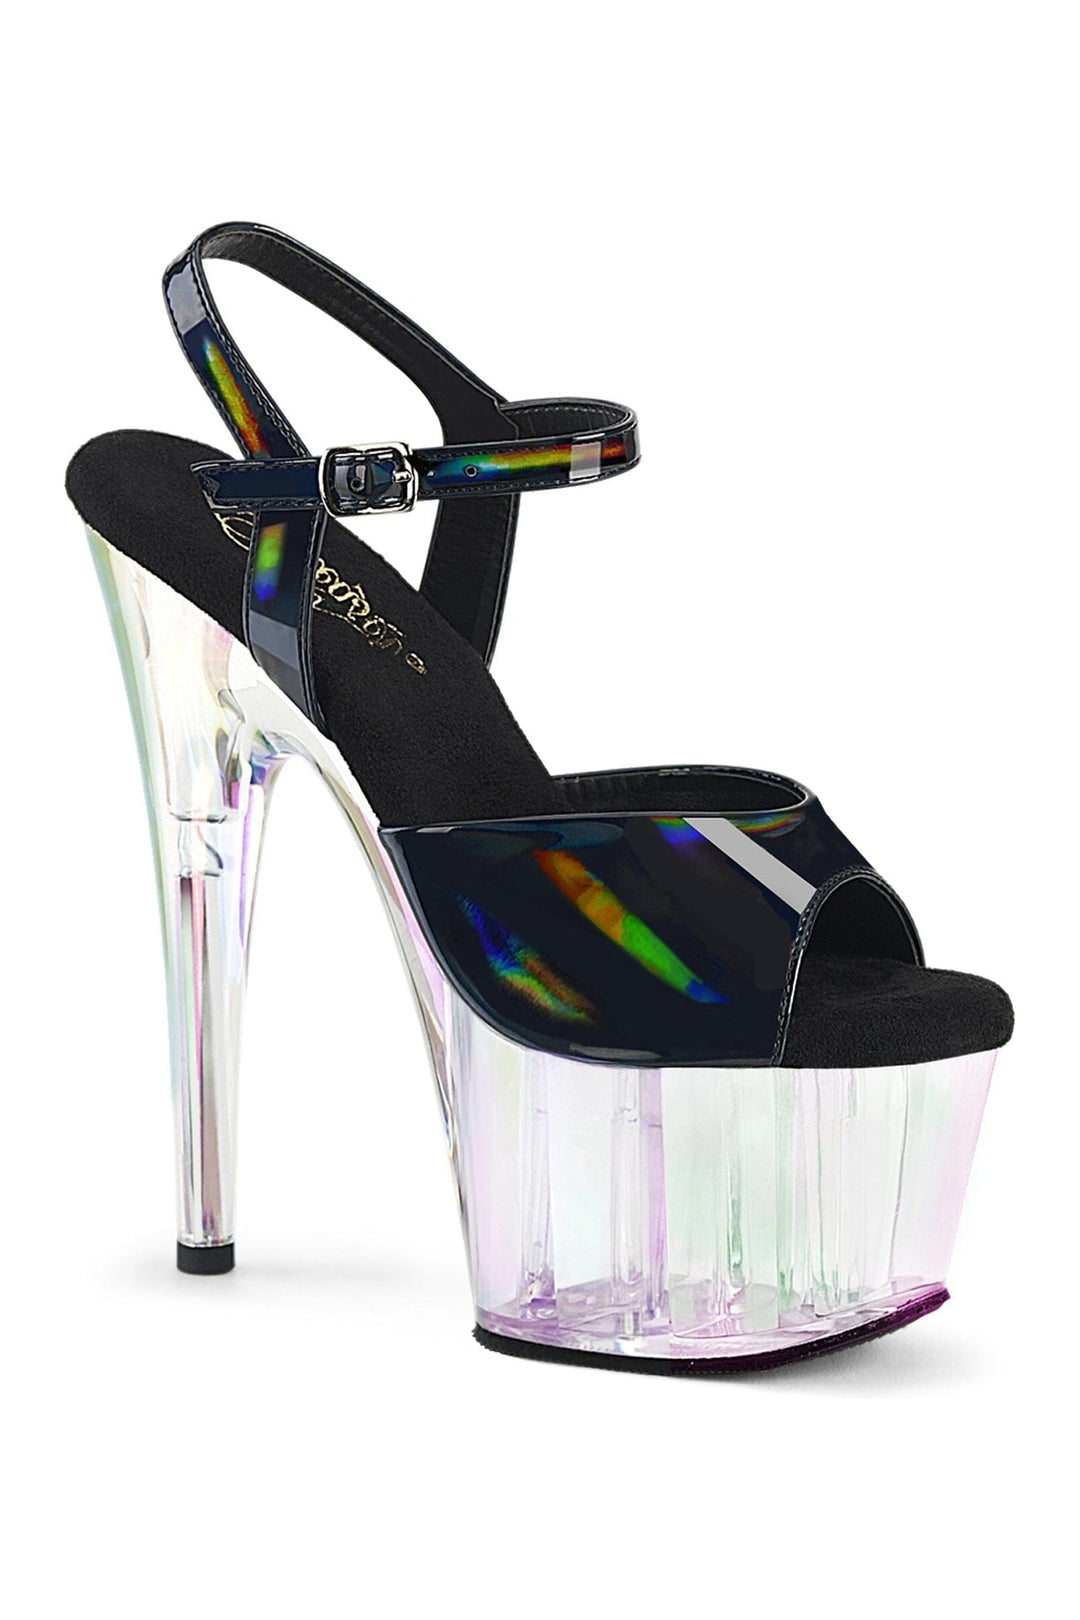 ADORE-709HT Black Hologram Sandal-Sandals-Pleaser-Black-10-Hologram-SEXYSHOES.COM